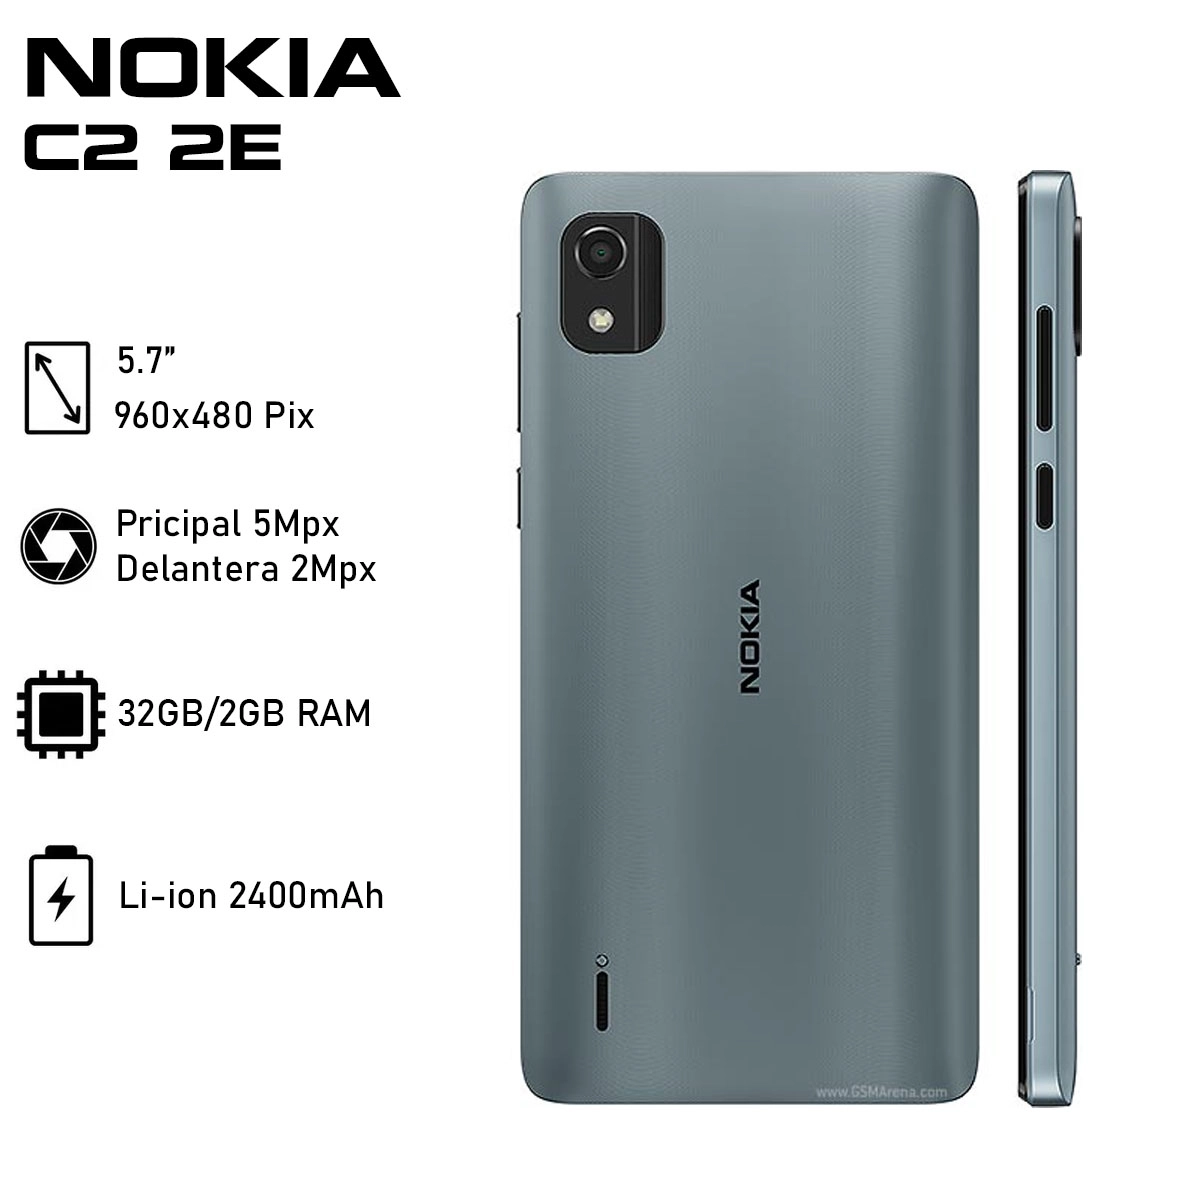 Smartphone Nokia C2 2E: Procesador Quad-Core (hasta 1.5 GHz